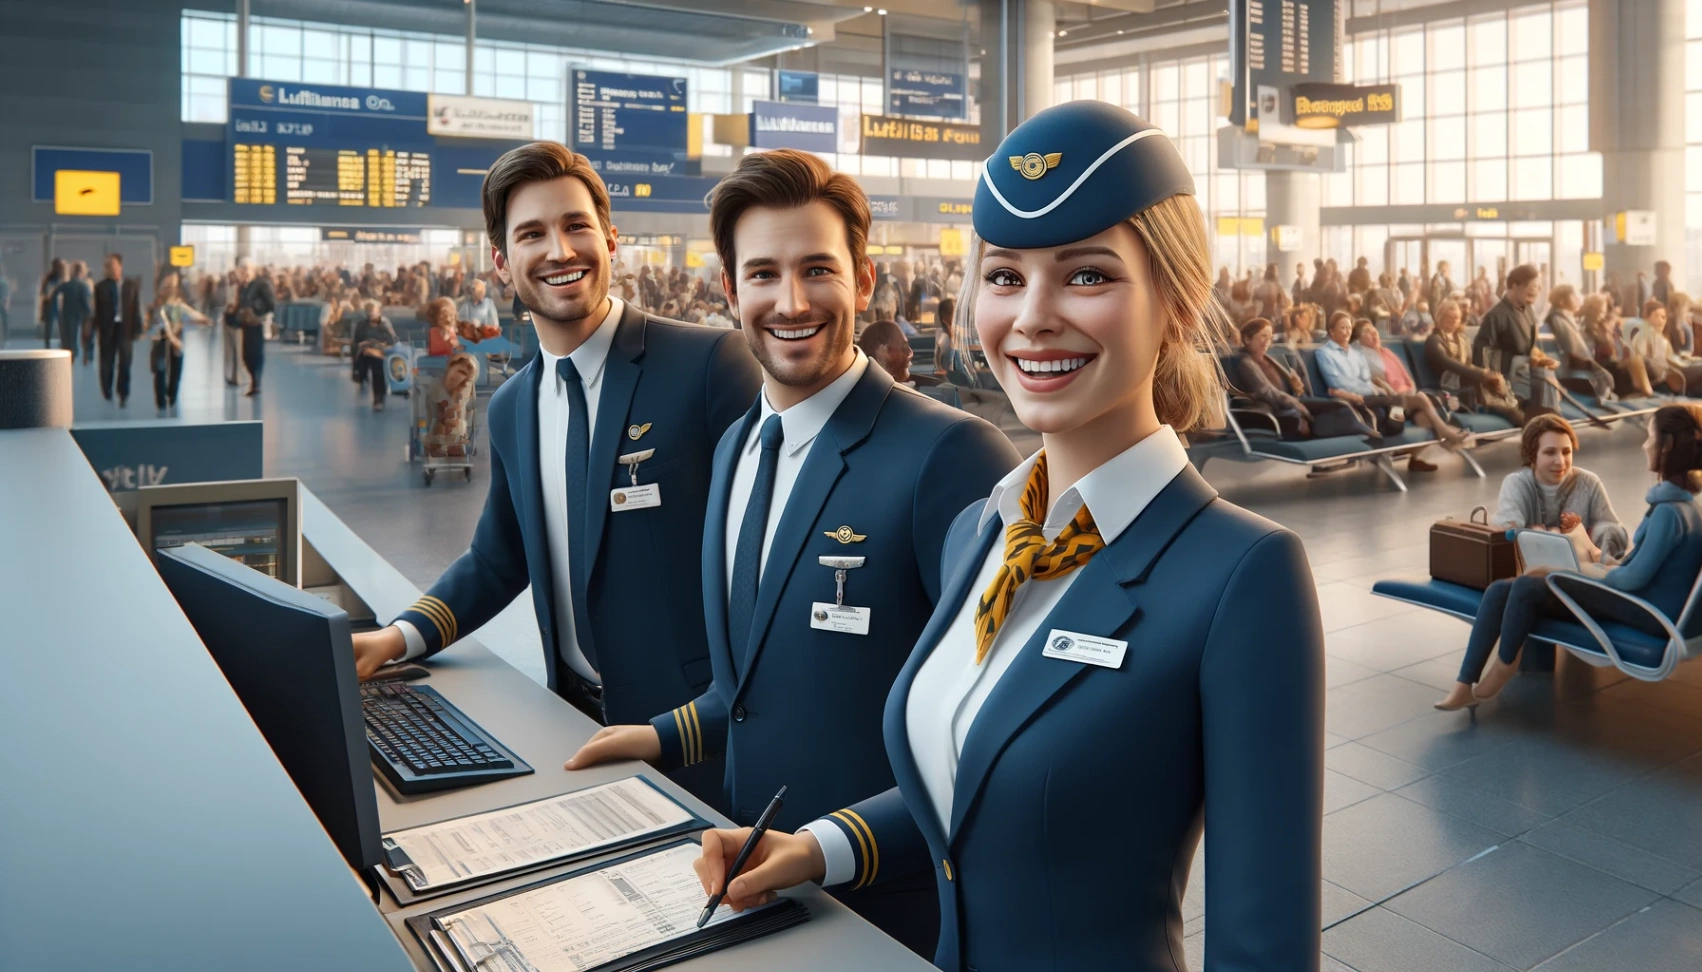 Offres d'emploi au sein du groupe Lufthansa : Apprenez comment postuler